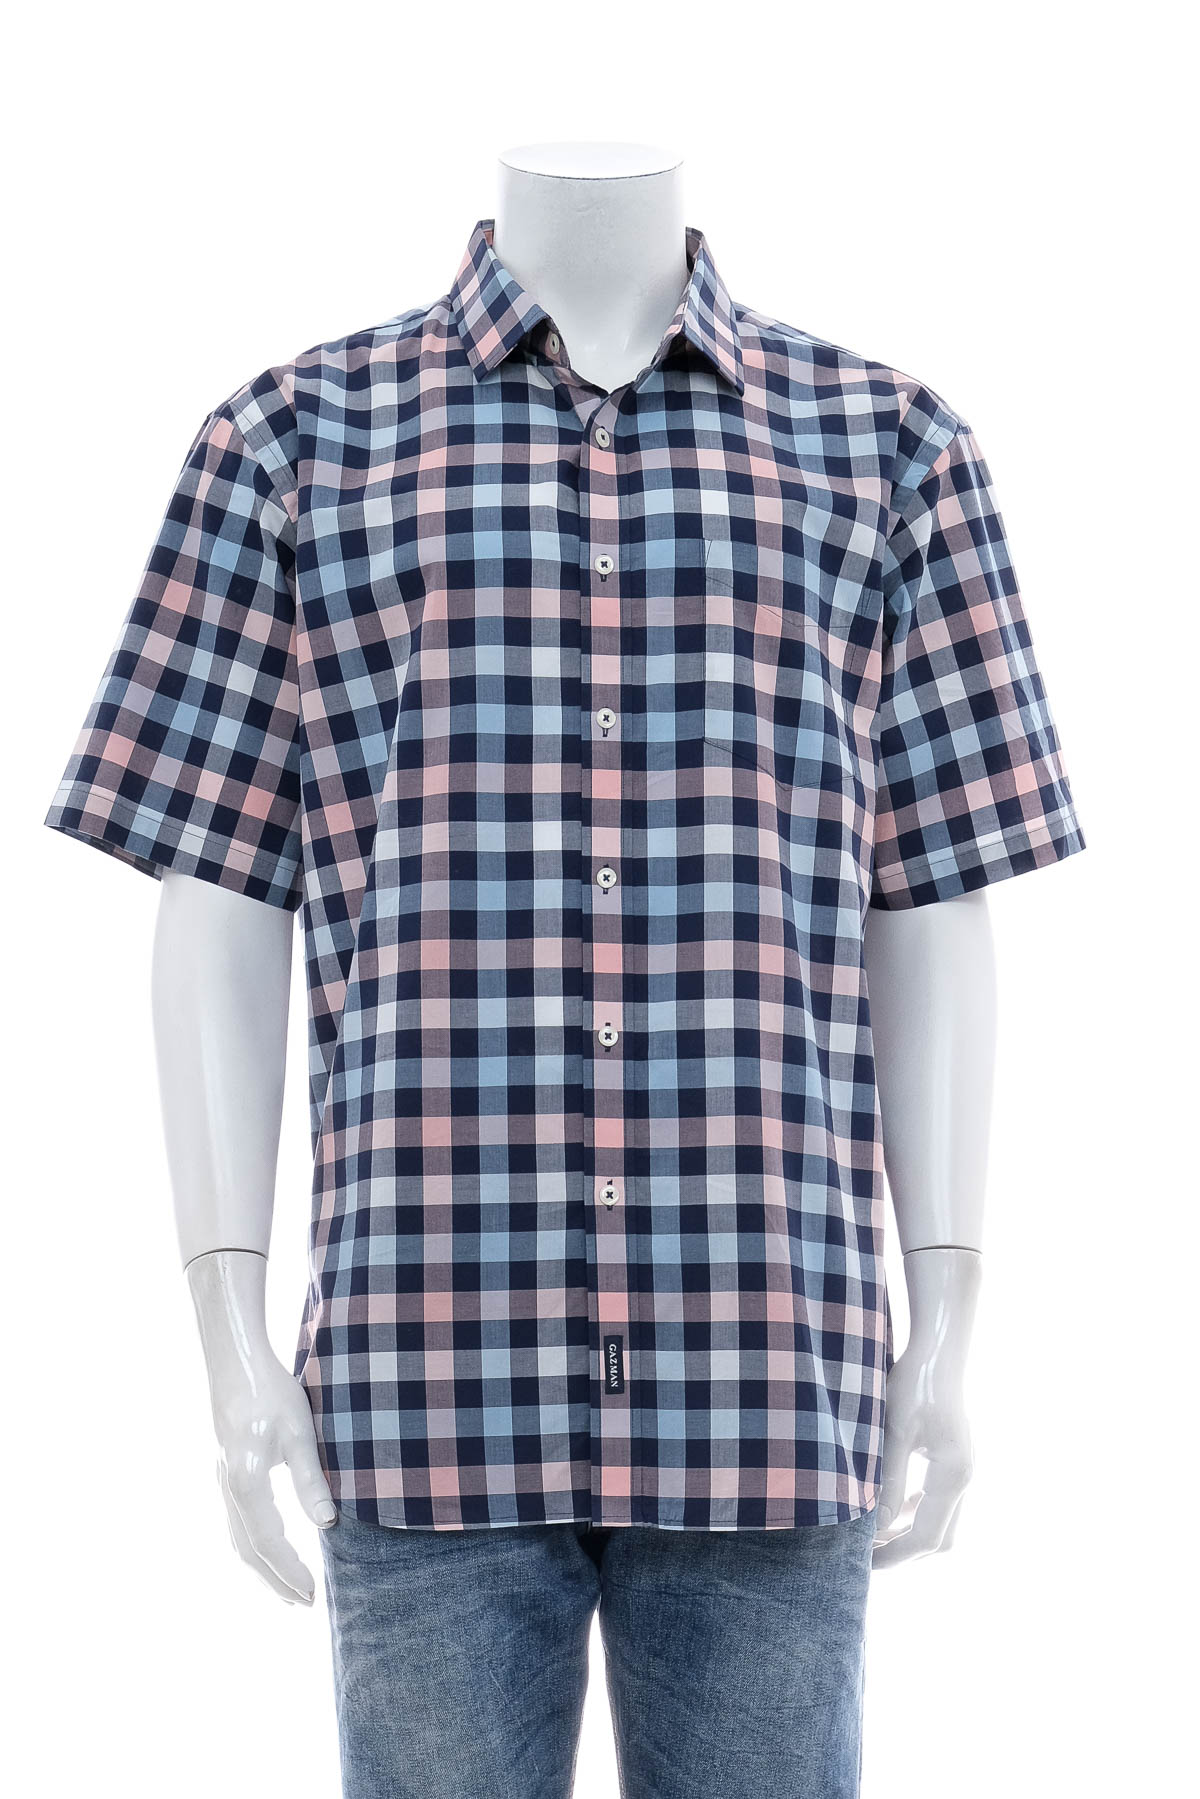 Men's shirt - GAZMAN - 0